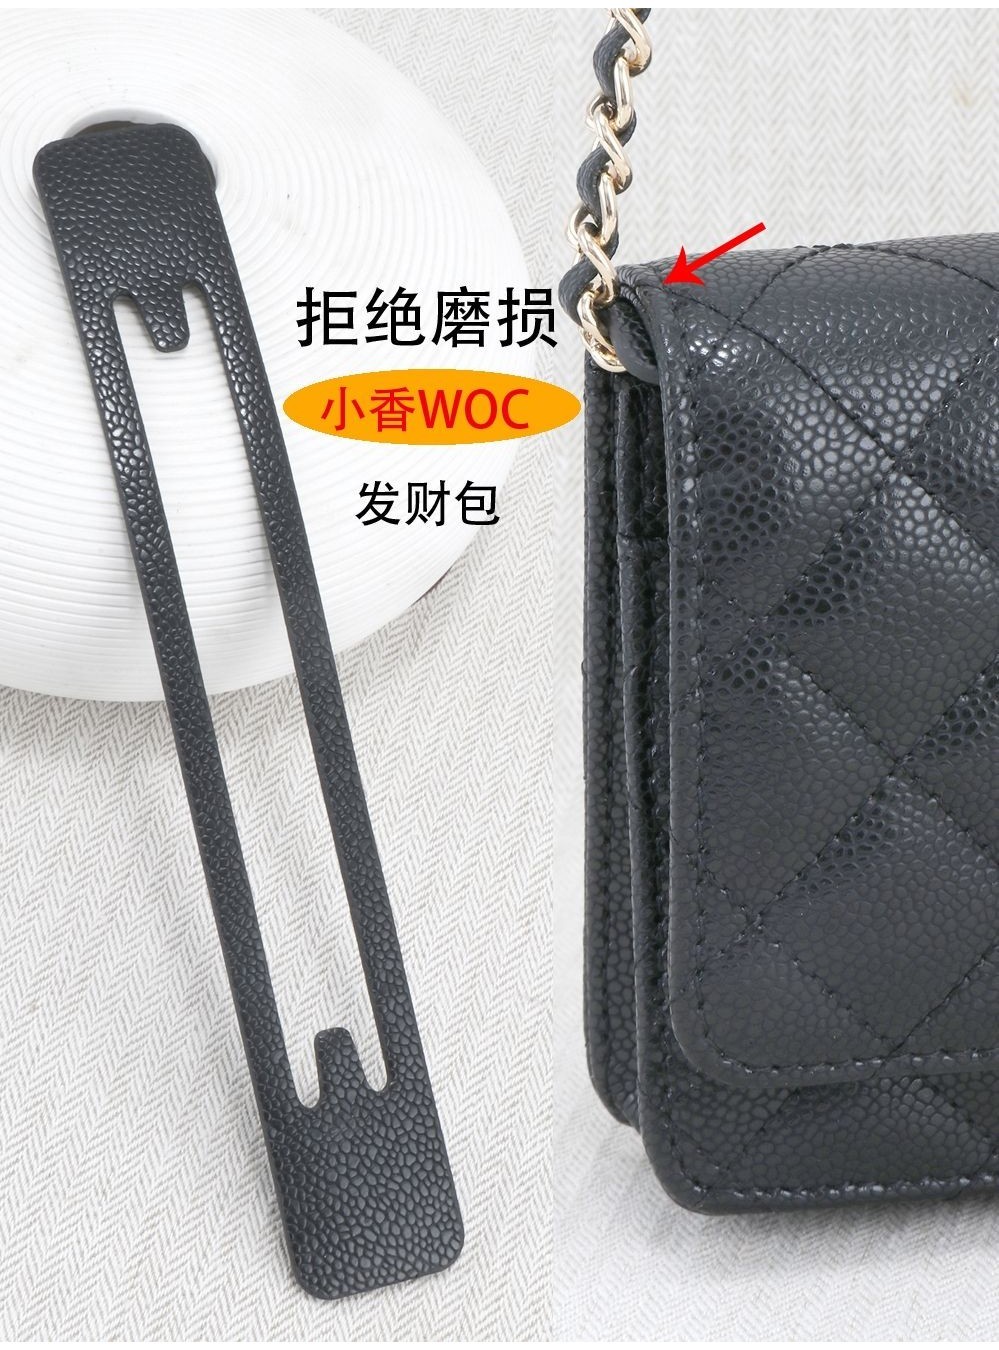 อุปกรณ์เสริมกระเป๋า Chanel Fortune Bag WOC ป้องกันการสึกหรอ